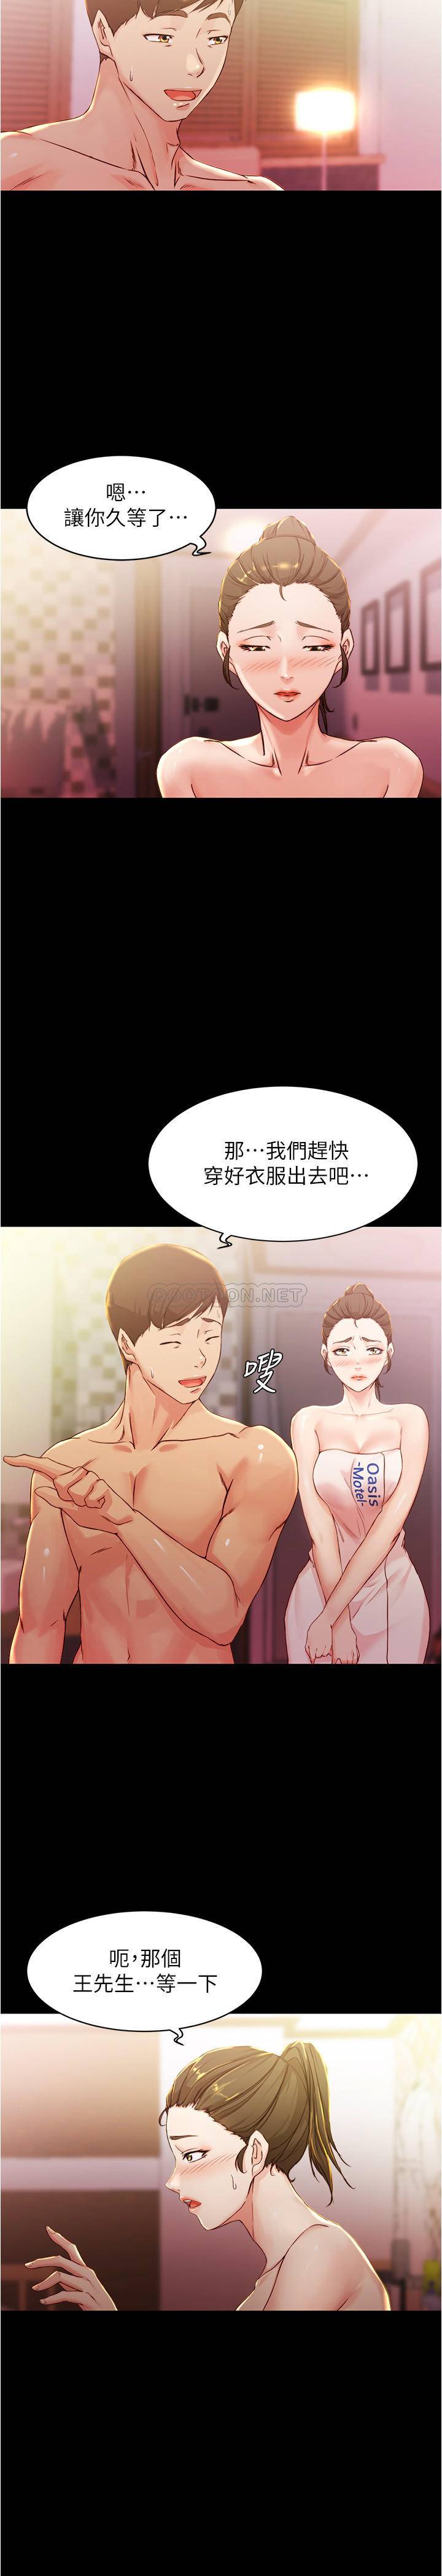 韩国污漫画 小褲褲筆記 第26话 - 为了更令人满意的性爱 22